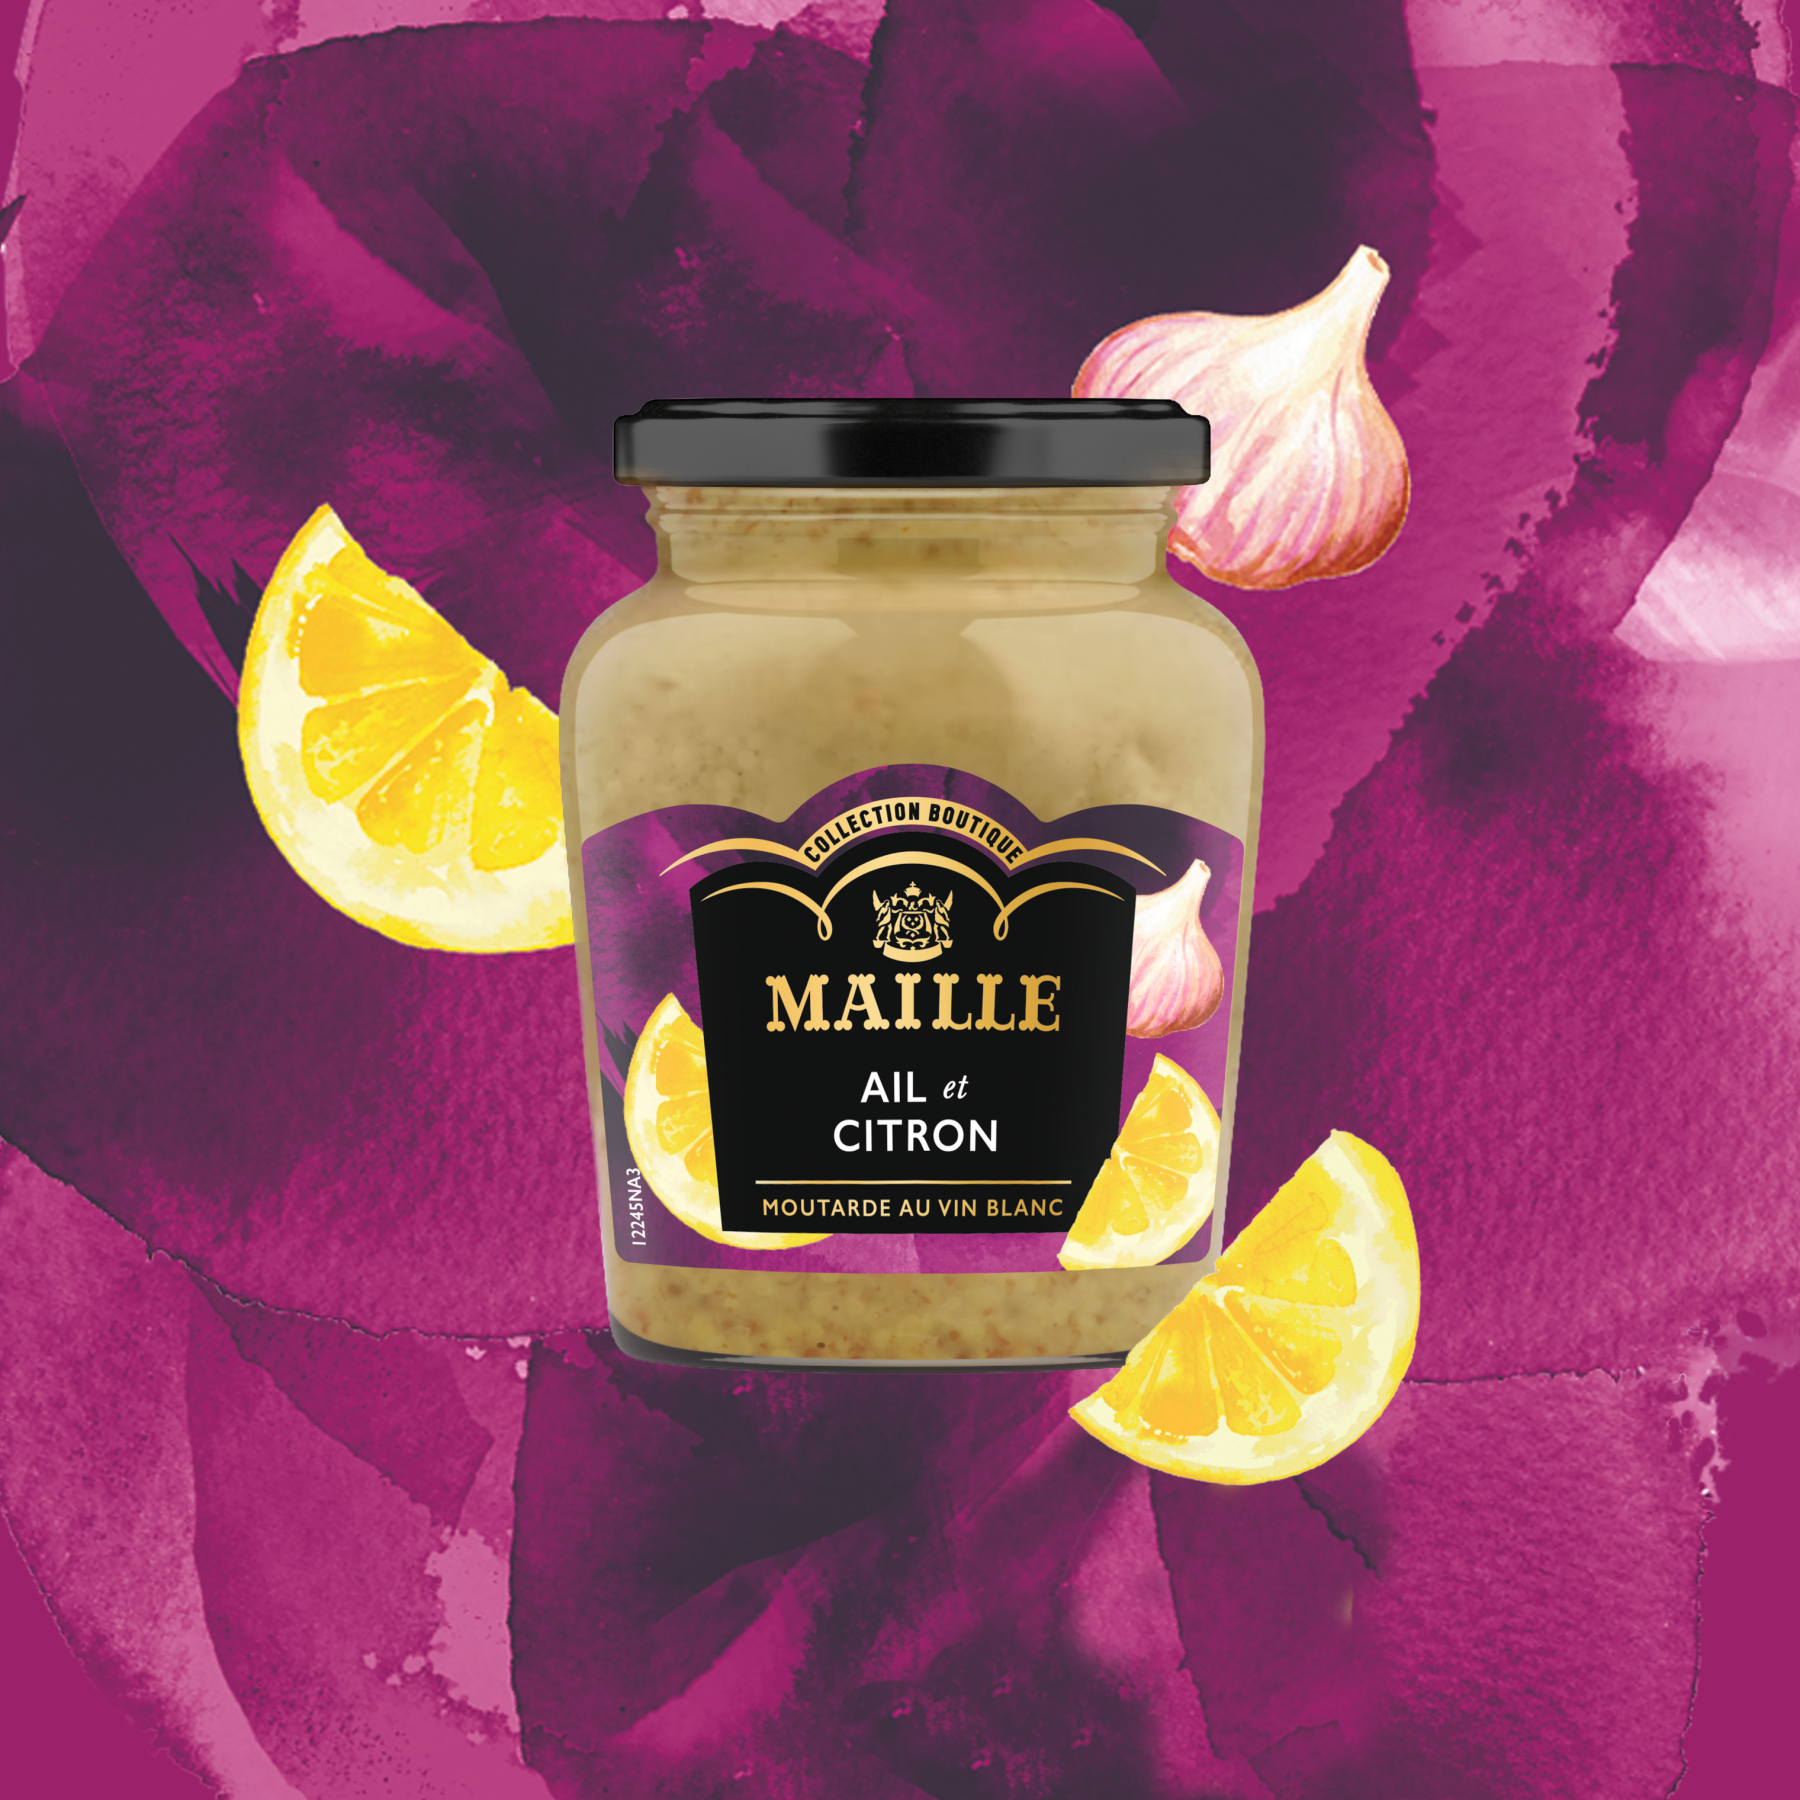 Maille - Moutarde au vin blanc, ail et citron, 108 g, new visual